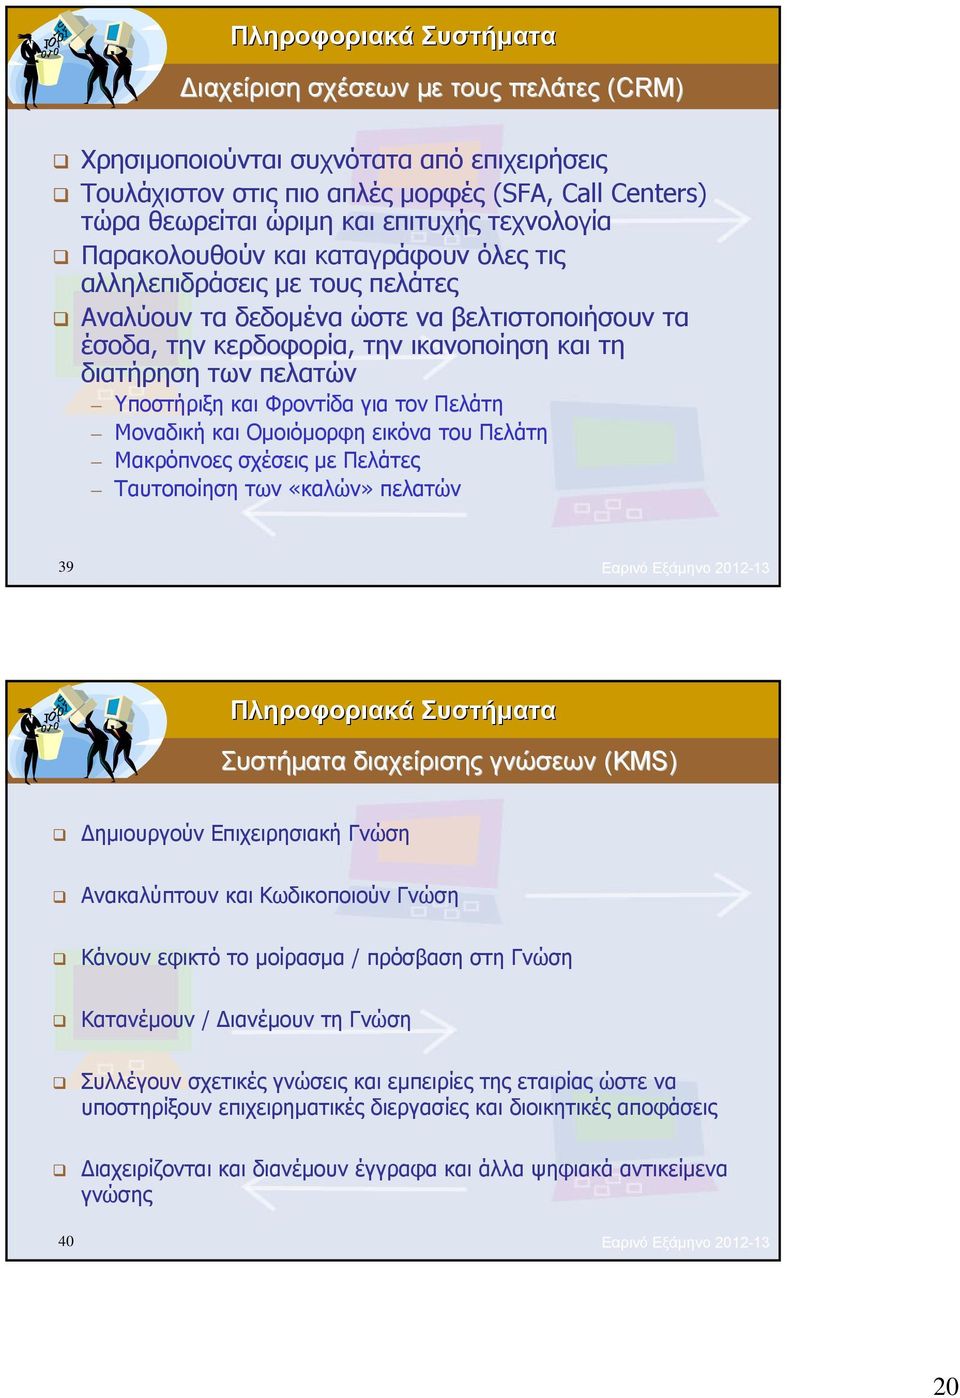 για τον Πελάτη Μοναδική και Ομοιόμορφη εικόνα του Πελάτη Μακρόπνοες σχέσεις με Πελάτες Ταυτοποίηση των «καλών» πελατών 39 Εαρινό Εξάμηνο 2012-13 Συστήματα διαχείρισης γνώσεων (KMS) Δημιουργούν